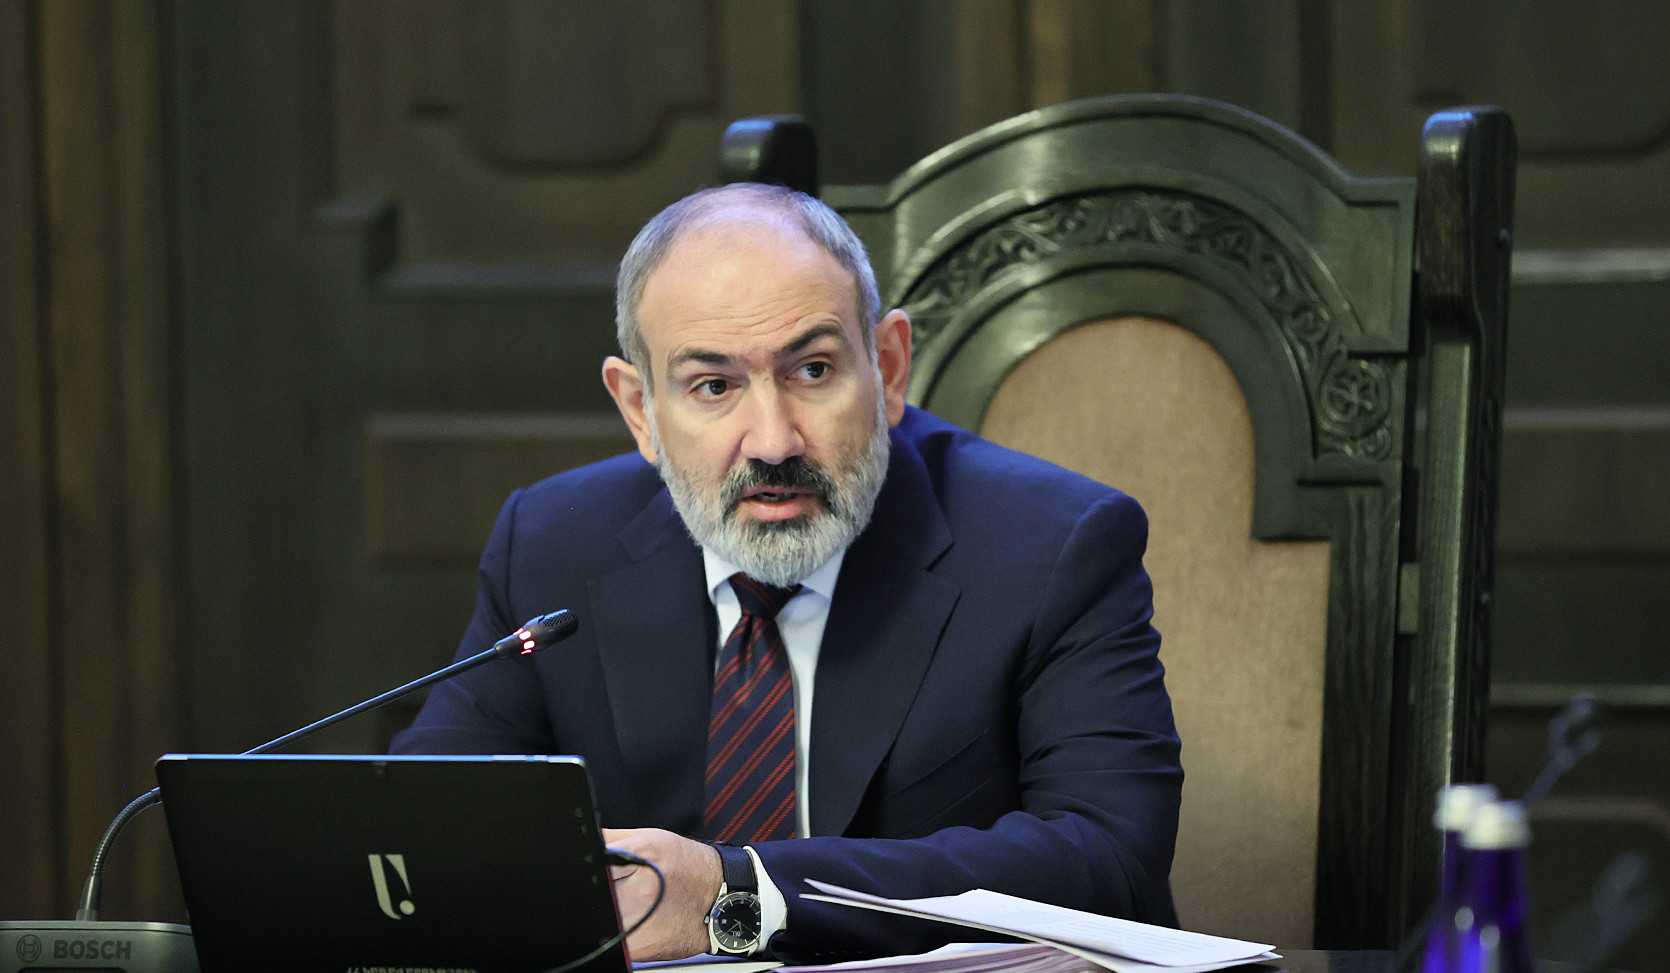 ՀՀ վարչապետն անդրադարձել է Ադրբեջանի կողմից ԼՂ-ում իրականացված ահաբեկչական գործողությանն ու դրա նպատակներին